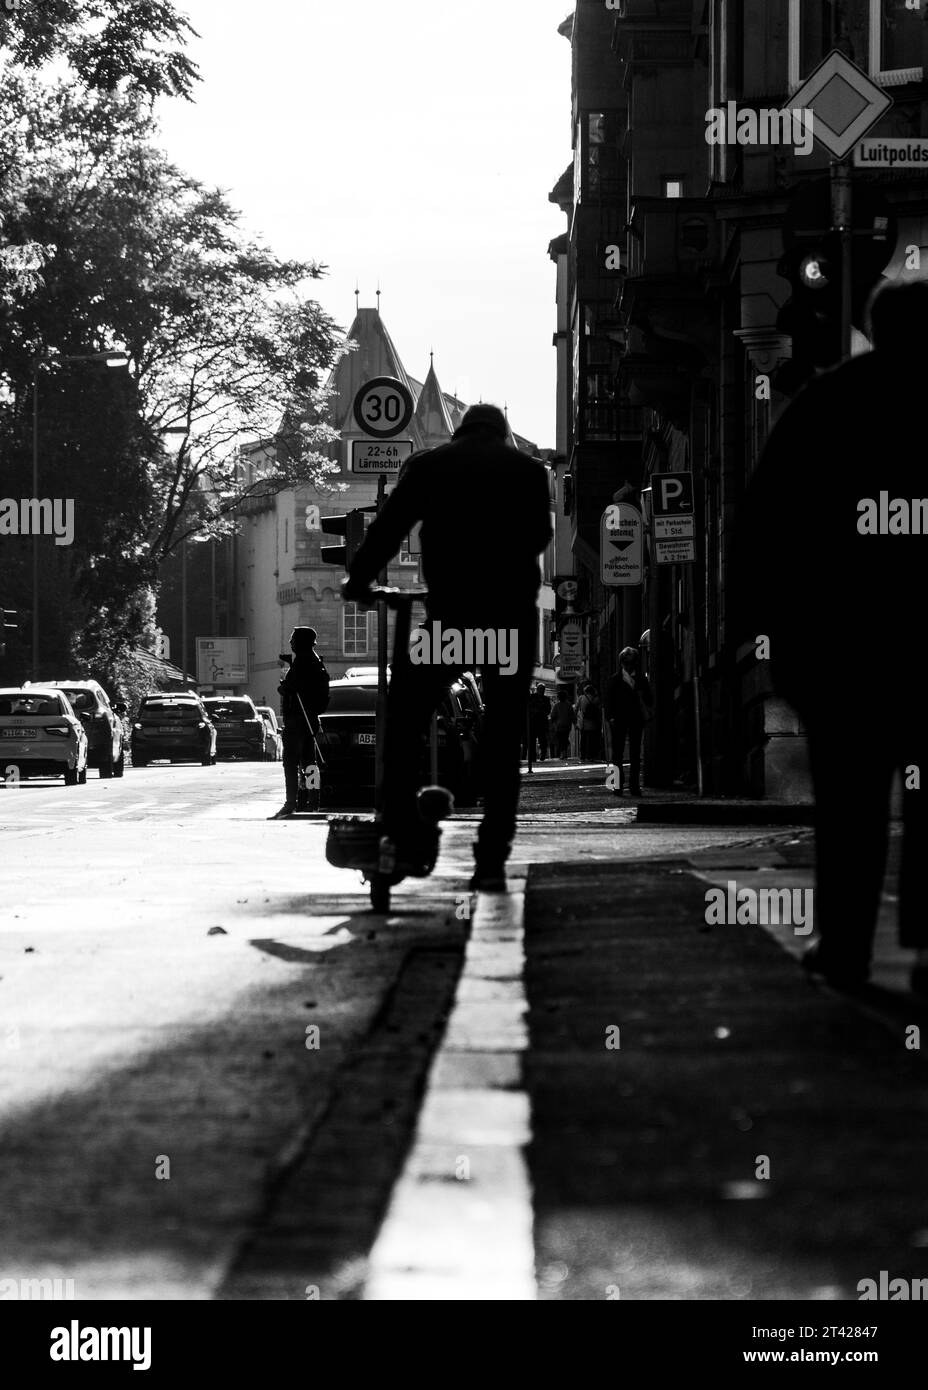 Una fotografia in bianco e nero di un uomo che guida uno scooter in un ambiente urbano Foto Stock